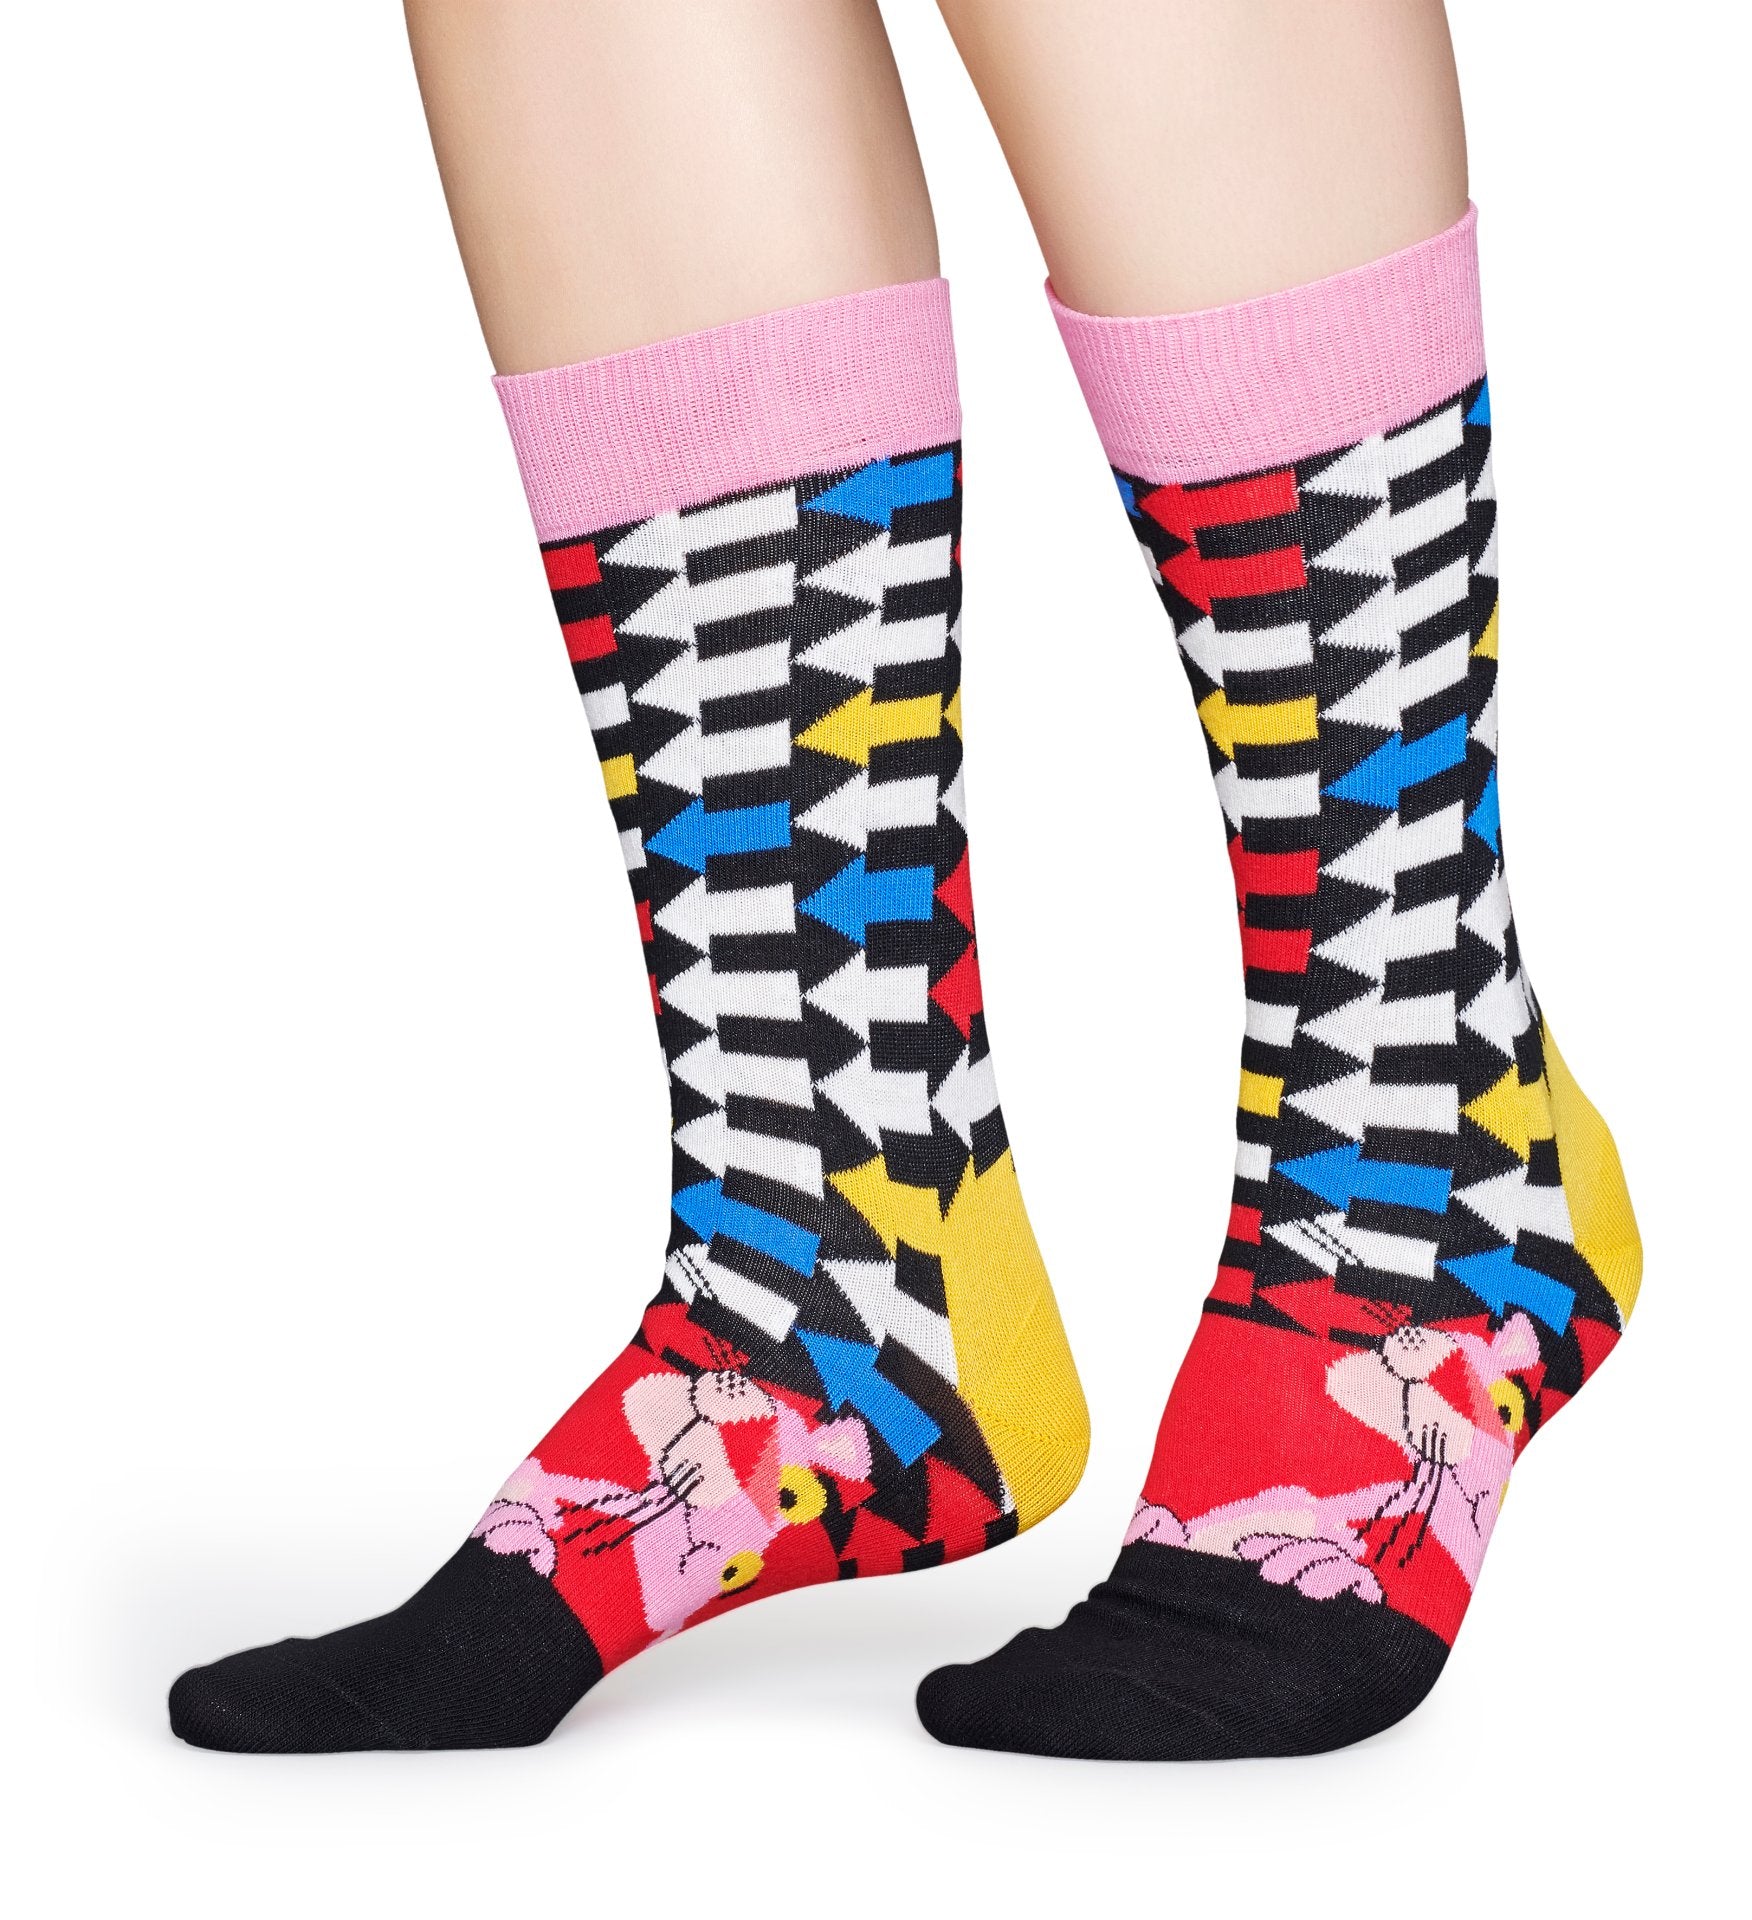 Barevné ponožky z kolekce Happy Socks x Pink Panther, vzor Jet Pink